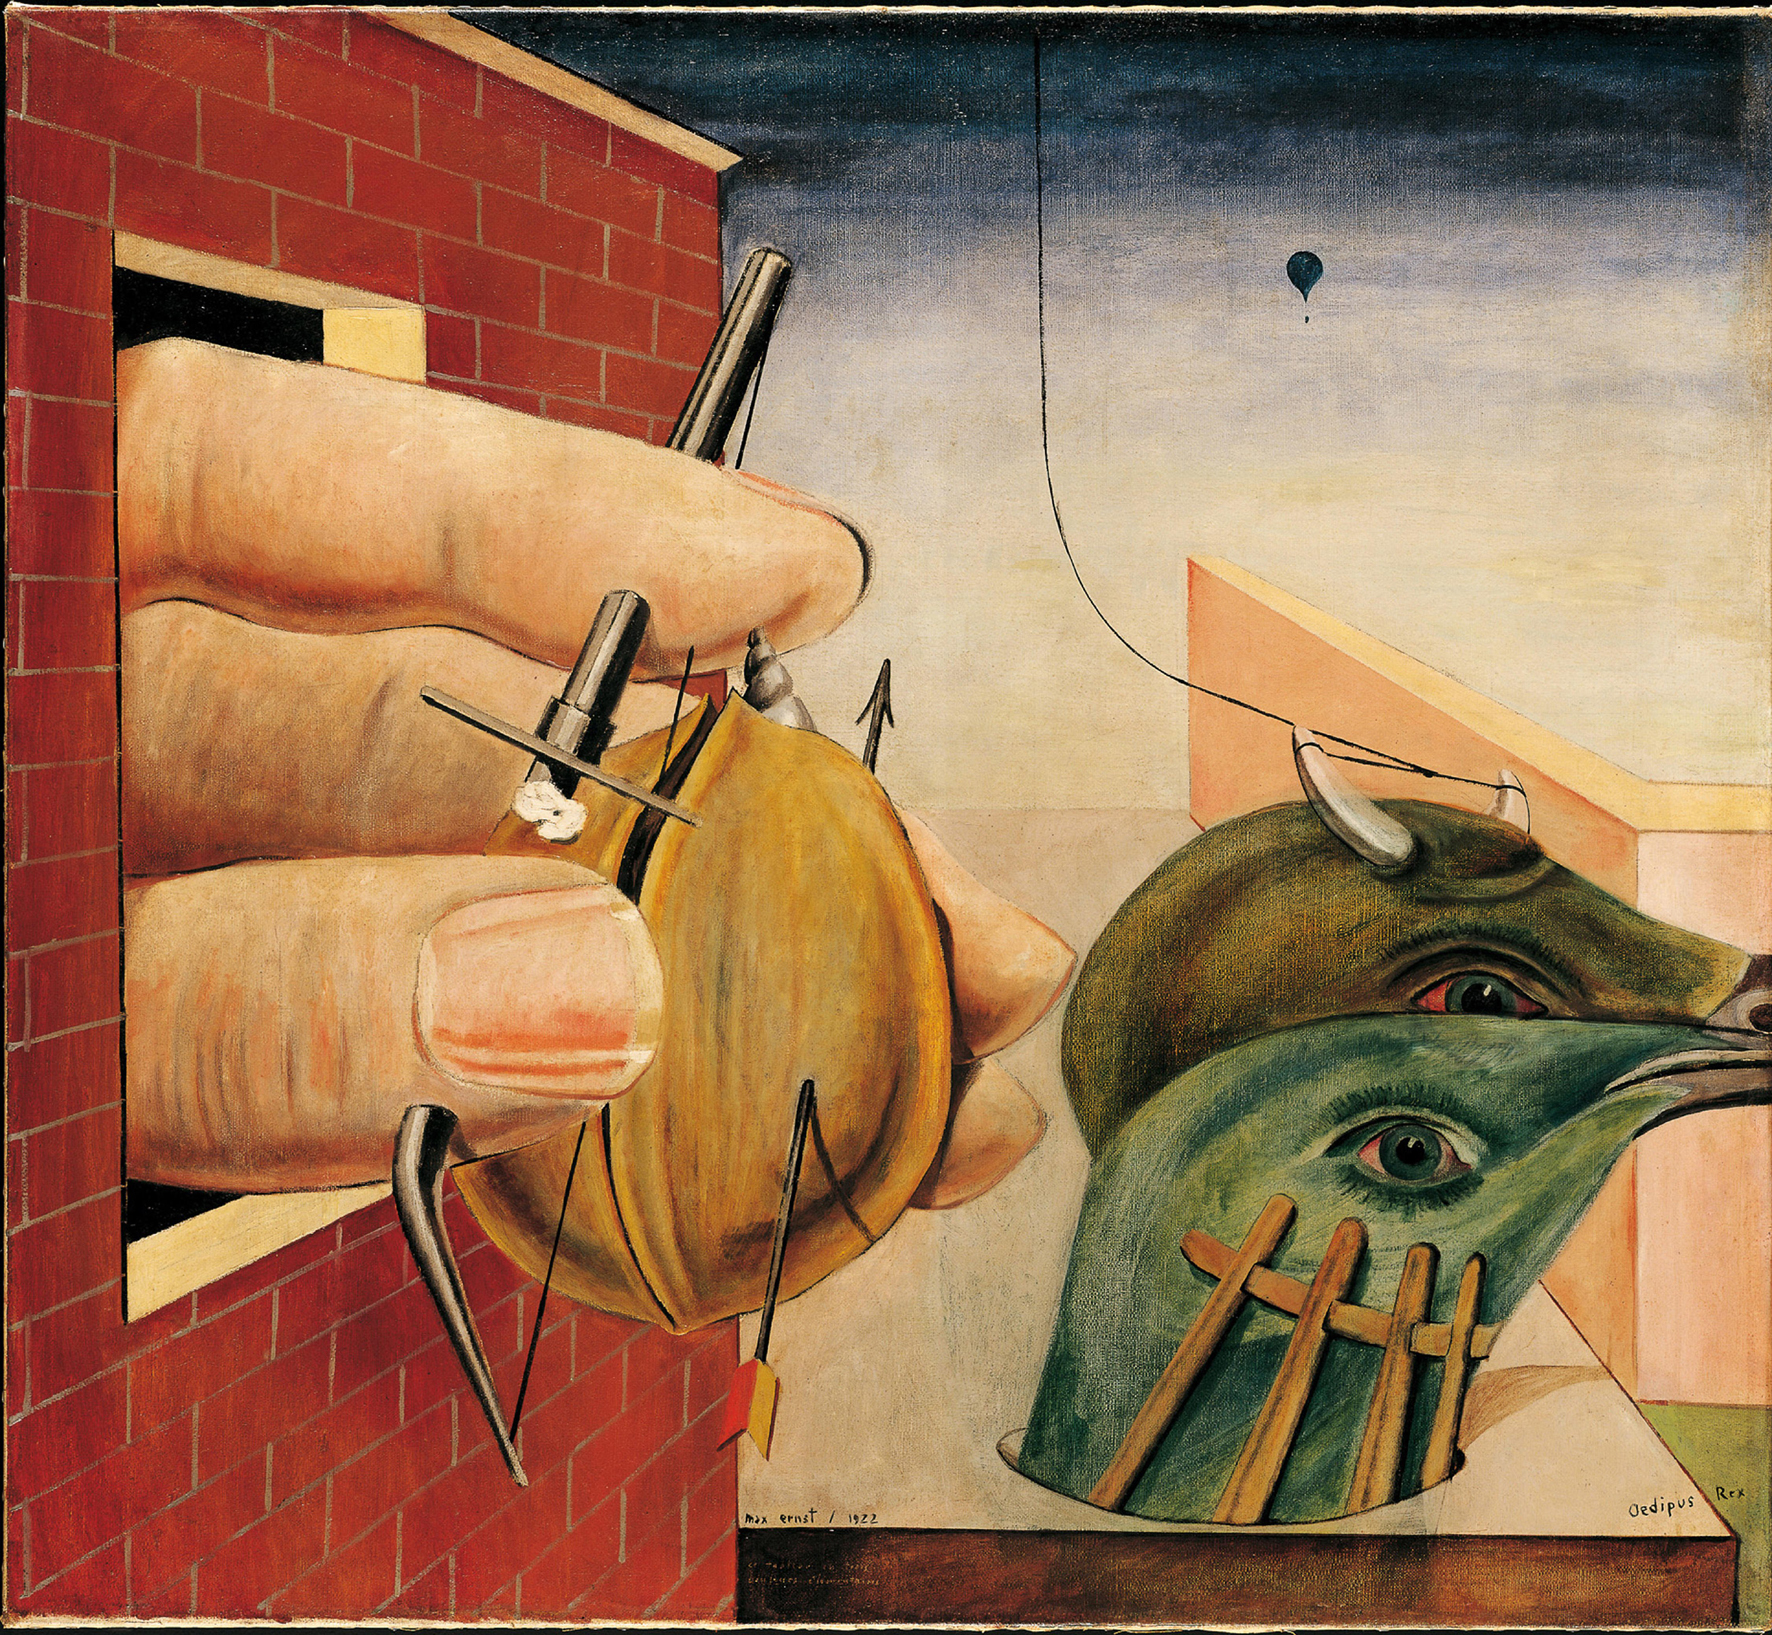 Max Ernst pittore, scultore, filosofo e poeta tedesco. La retrospettiva a Milano